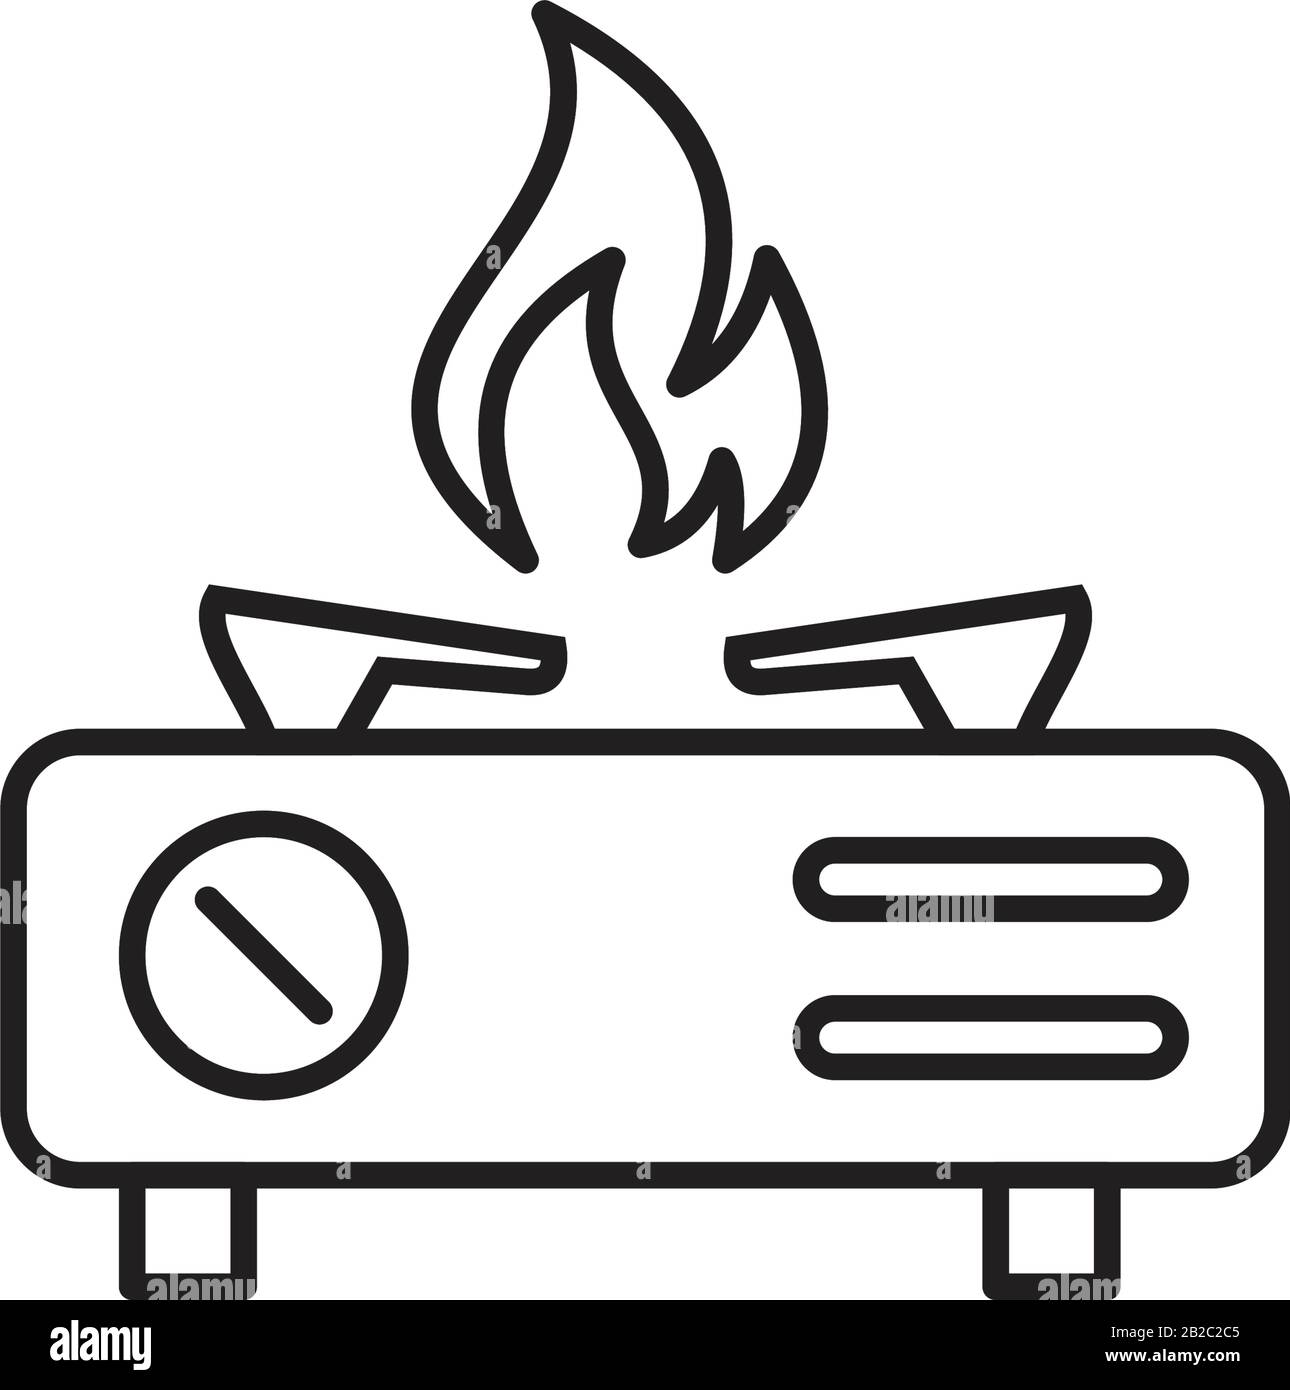 Modèle d'icône de cuisinière couleur noire modifiable. Symbole de l'icône de cuisinière illustration vectorielle plate pour la conception graphique et web. Illustration de Vecteur